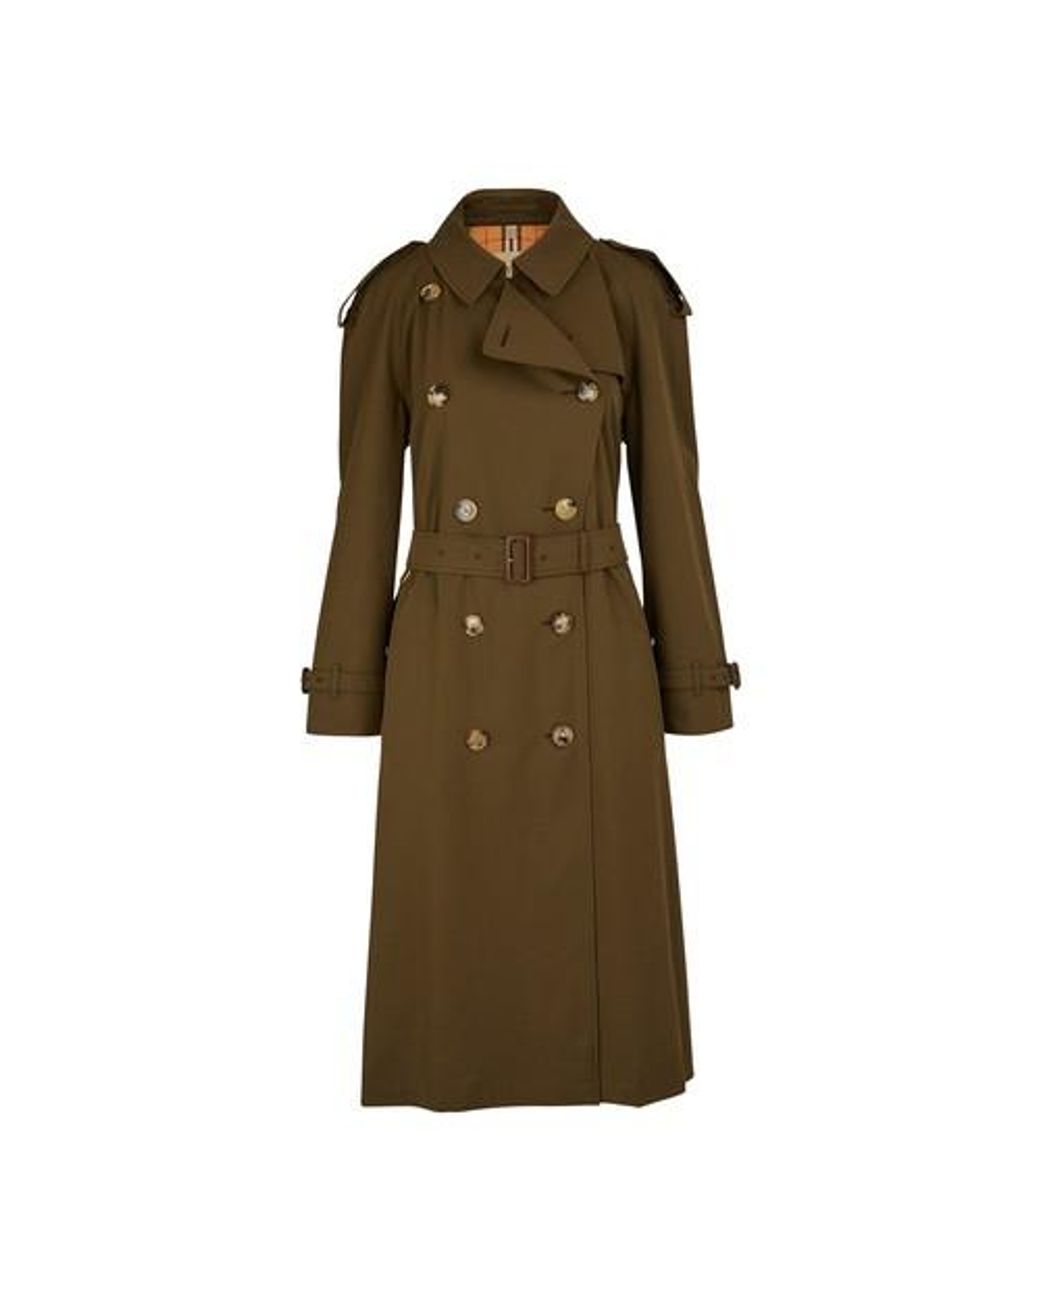 Femme Vêtements Manteaux Imperméables et trench coats Trench-coat Court En Coton Islington Burberry en coloris Neutre 